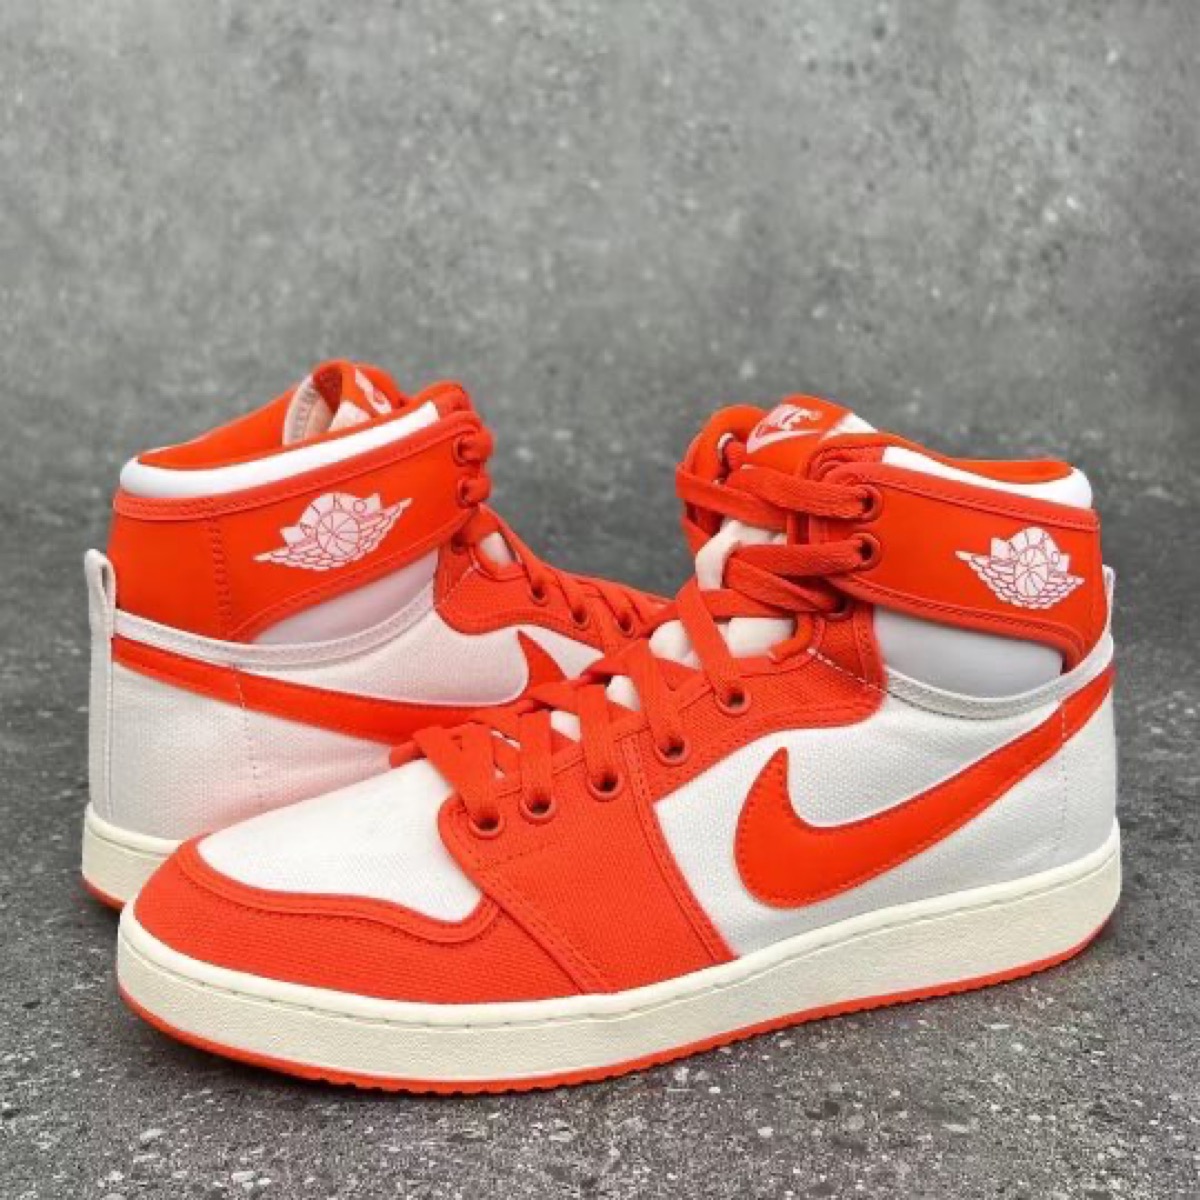 NikeAir Jordan 1 KO “Rush Orange”が国内日／日に発売